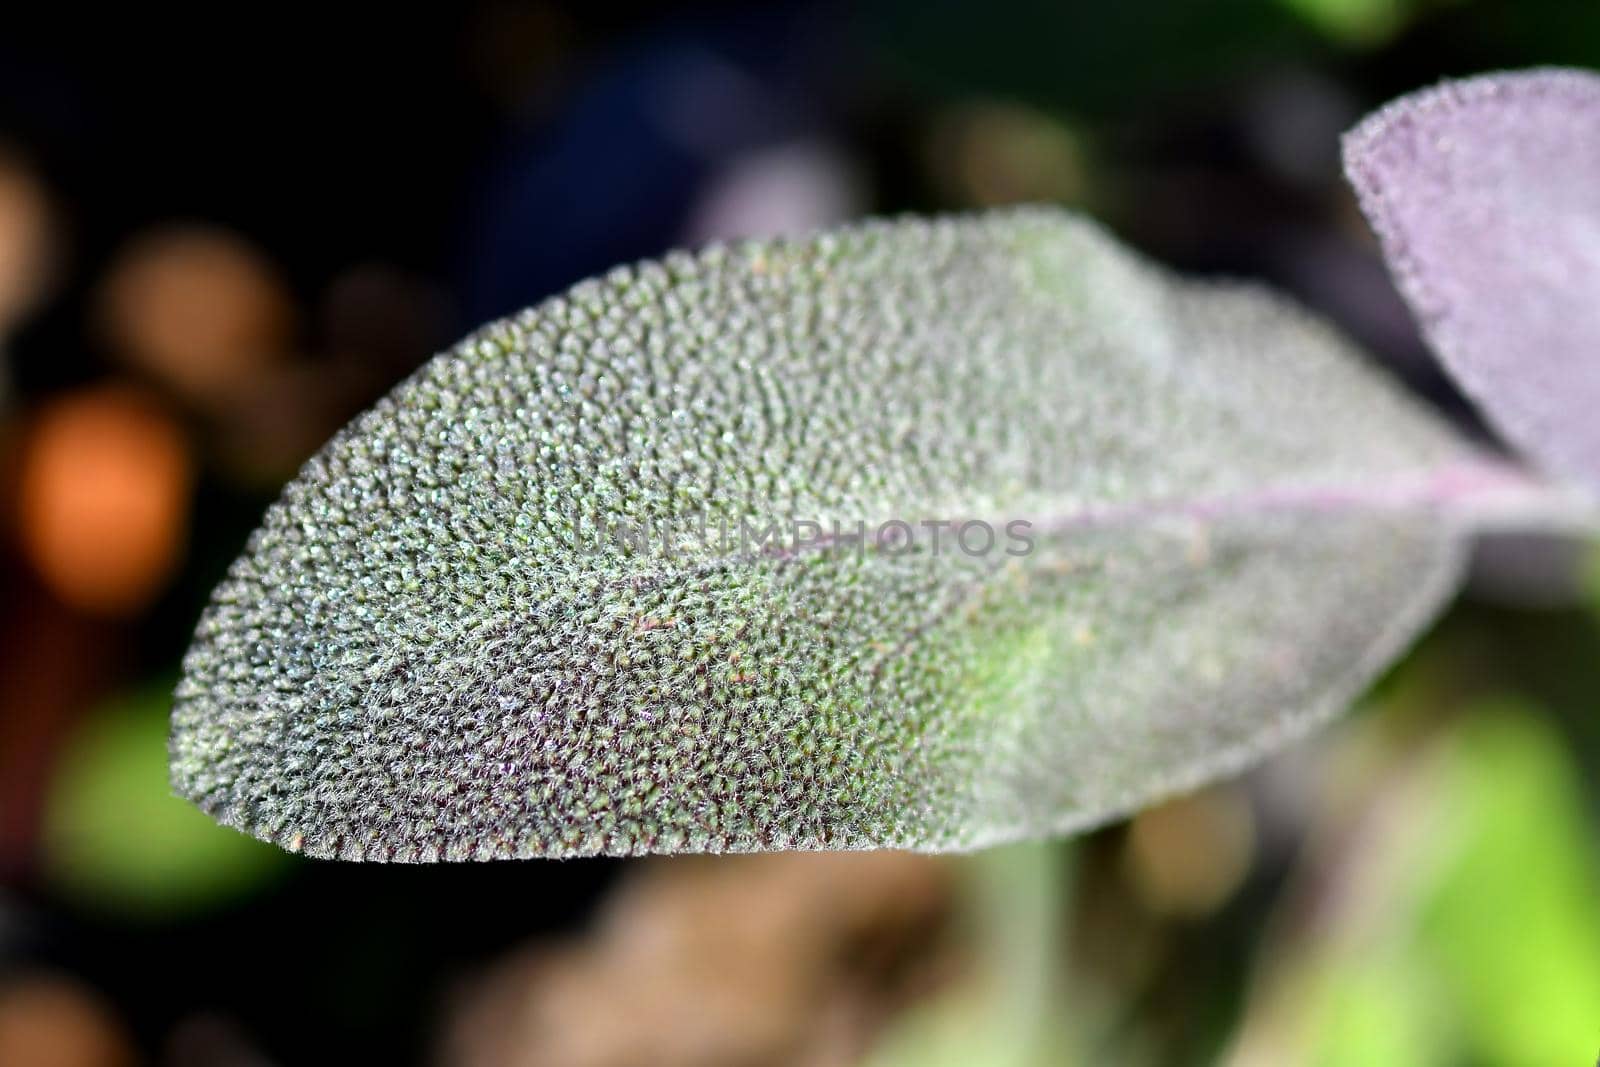 sage, medicinal plant with leaf